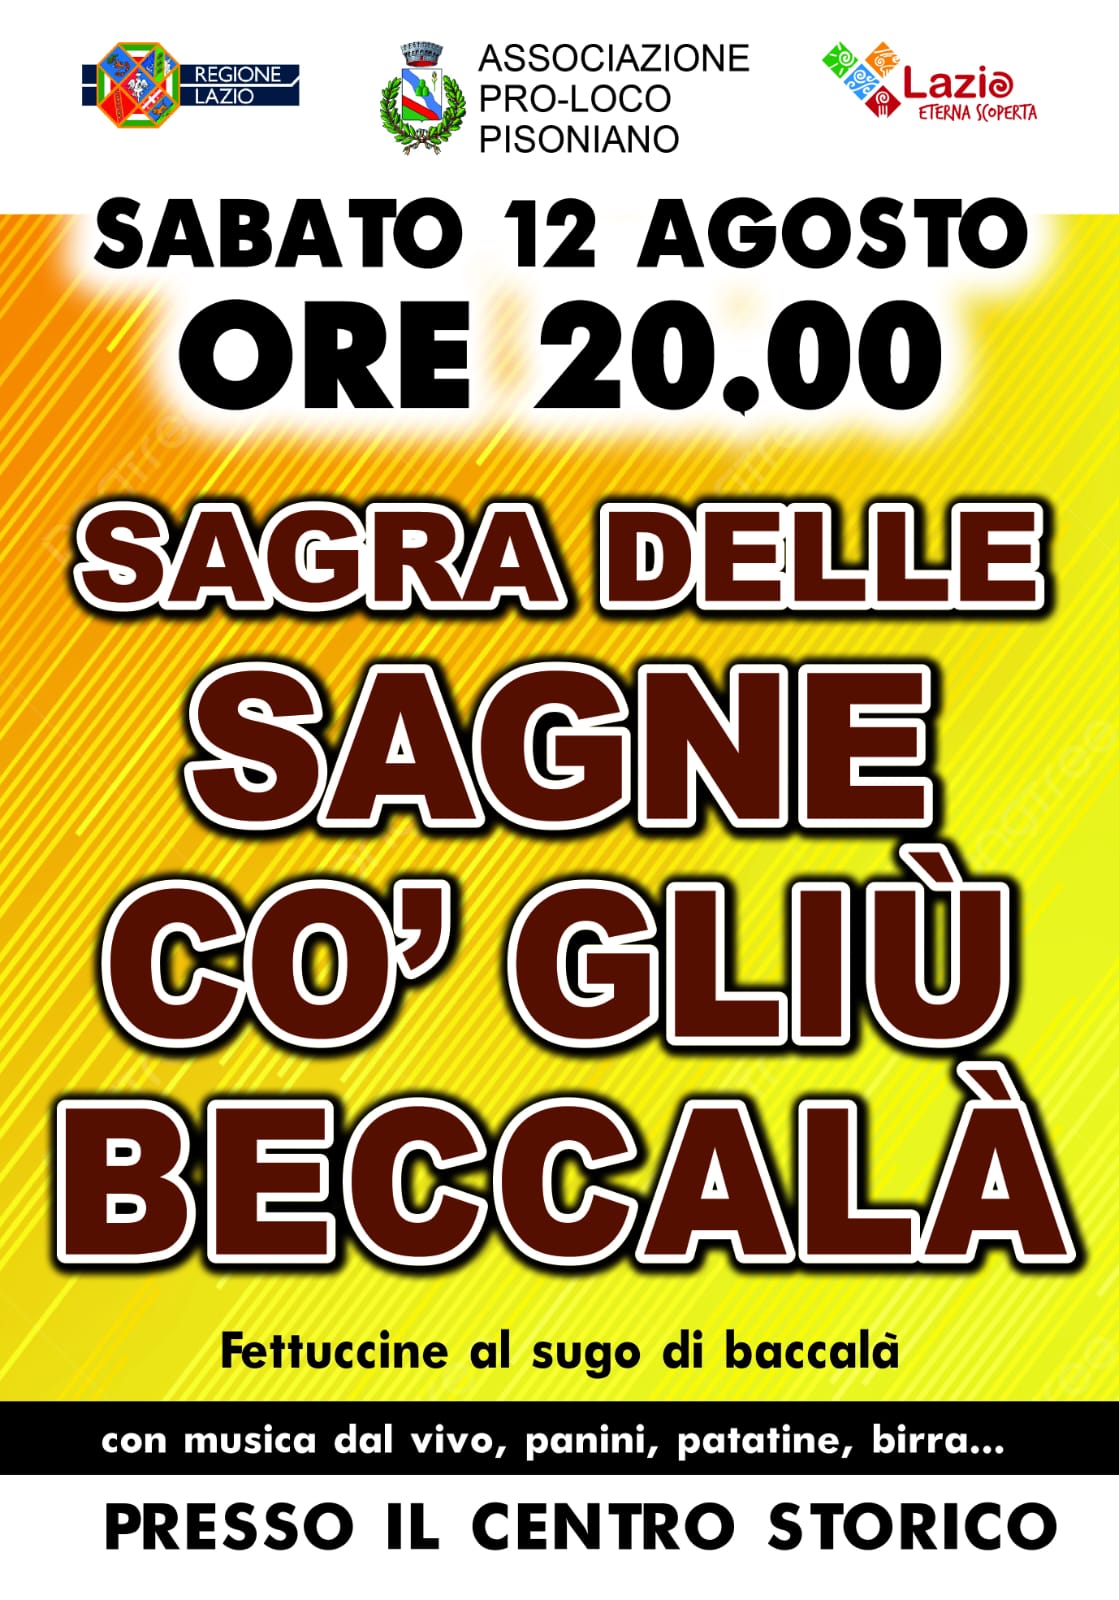 https://www.agenziaeventi.org/immagini_news/3707/pisoniano-sabato-12-agosto-sagra-delle-sagne-co-gliu-beccala-3707.jpg